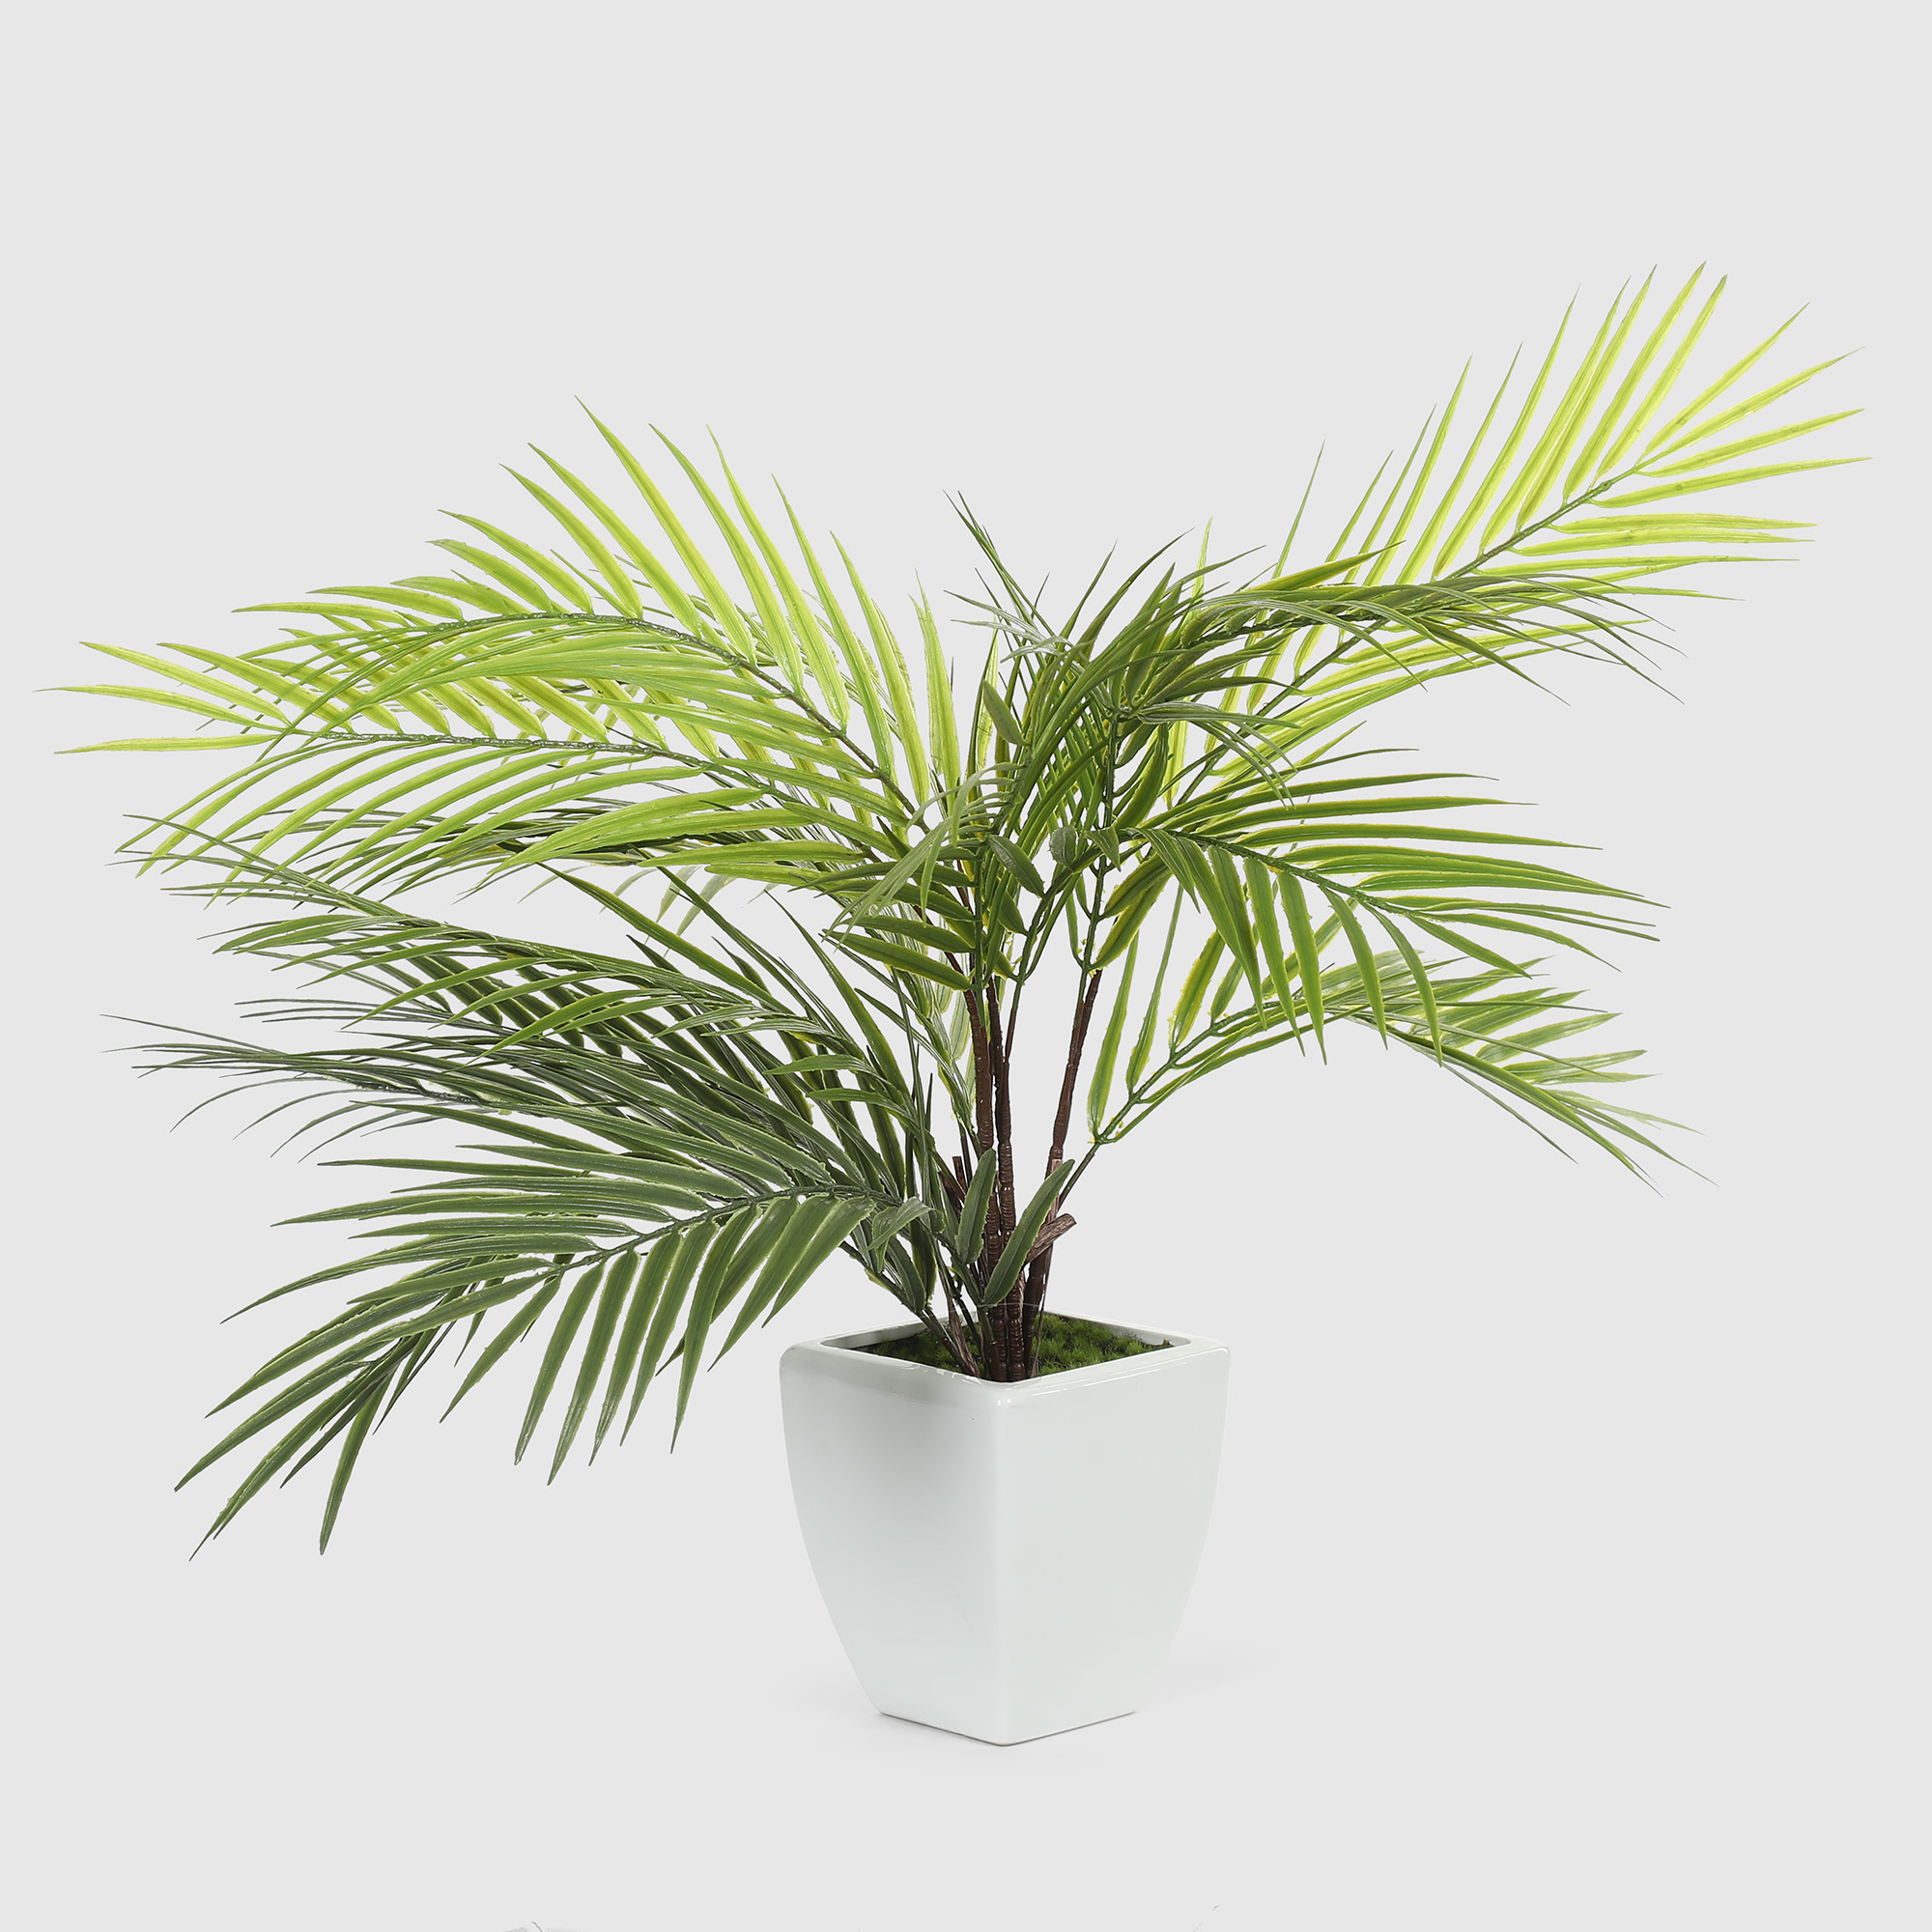 Куст пальмовый в белом кашпо Конэко-О 1013810159 60 см куст вереска конэко о в кашпо